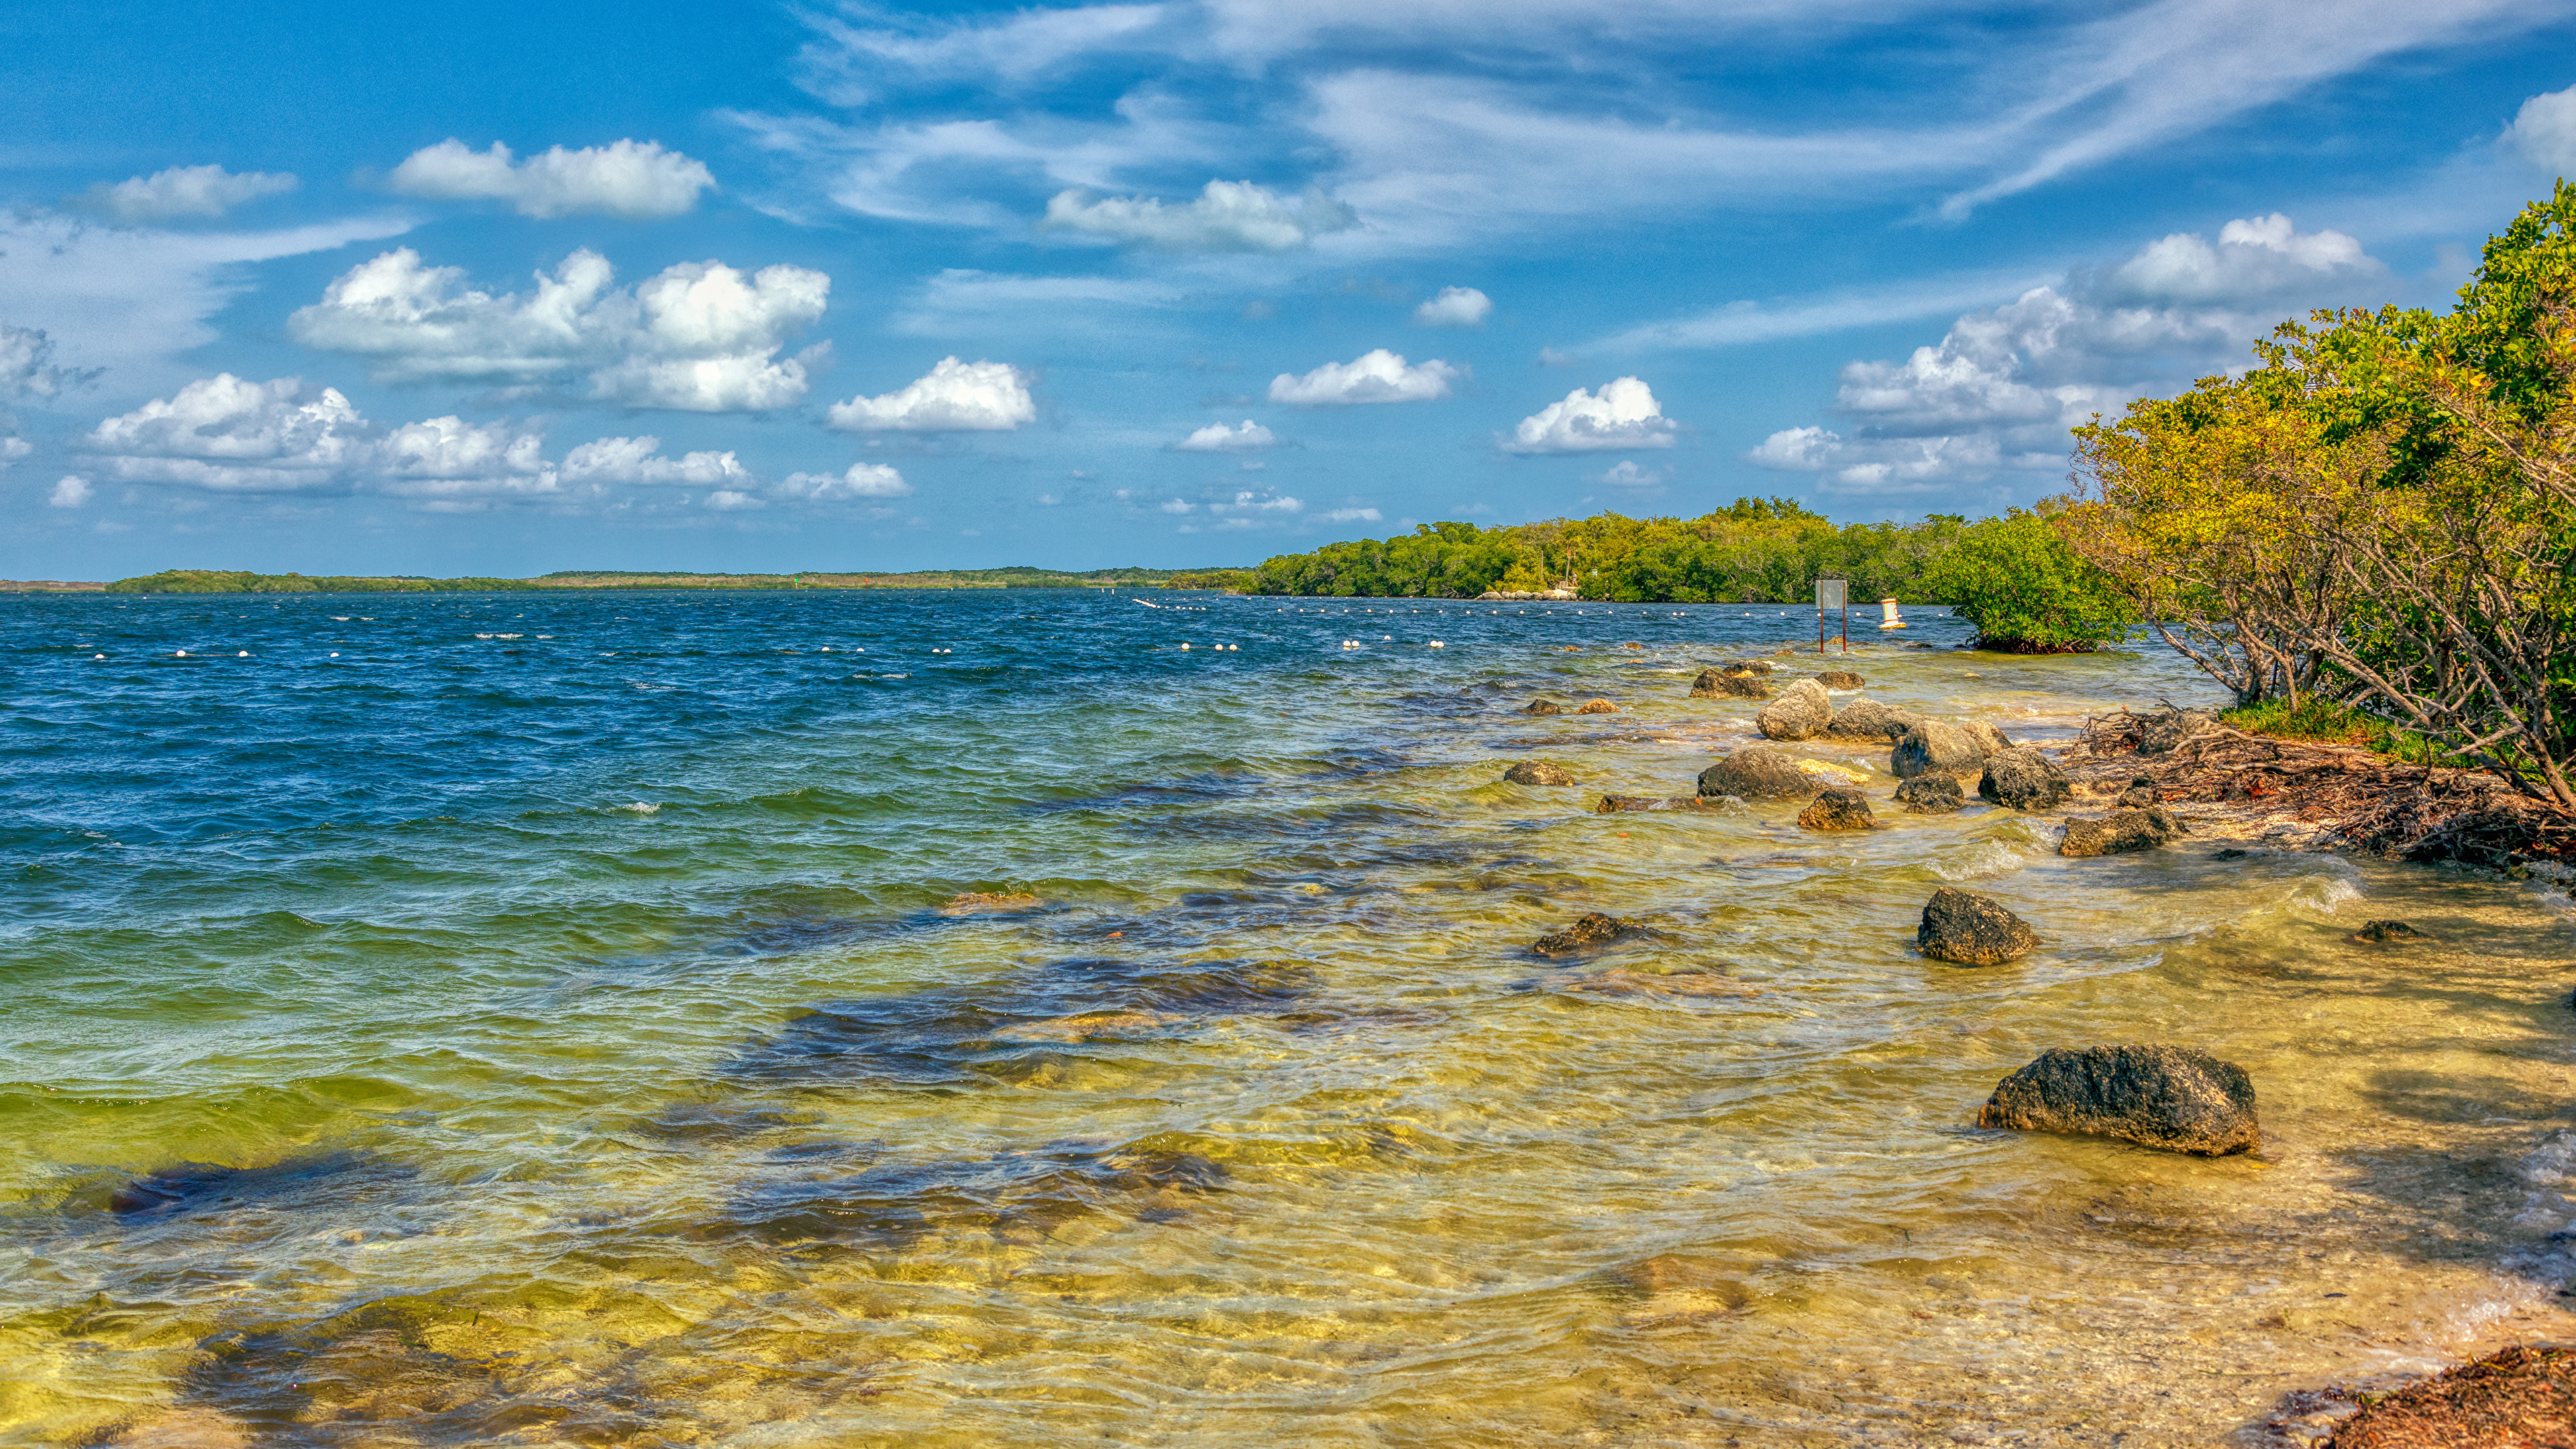 壁紙 3840x2160 アメリカ合衆国 海岸 石 Key Largo フロリダ州 湾 自然 ダウンロード 写真